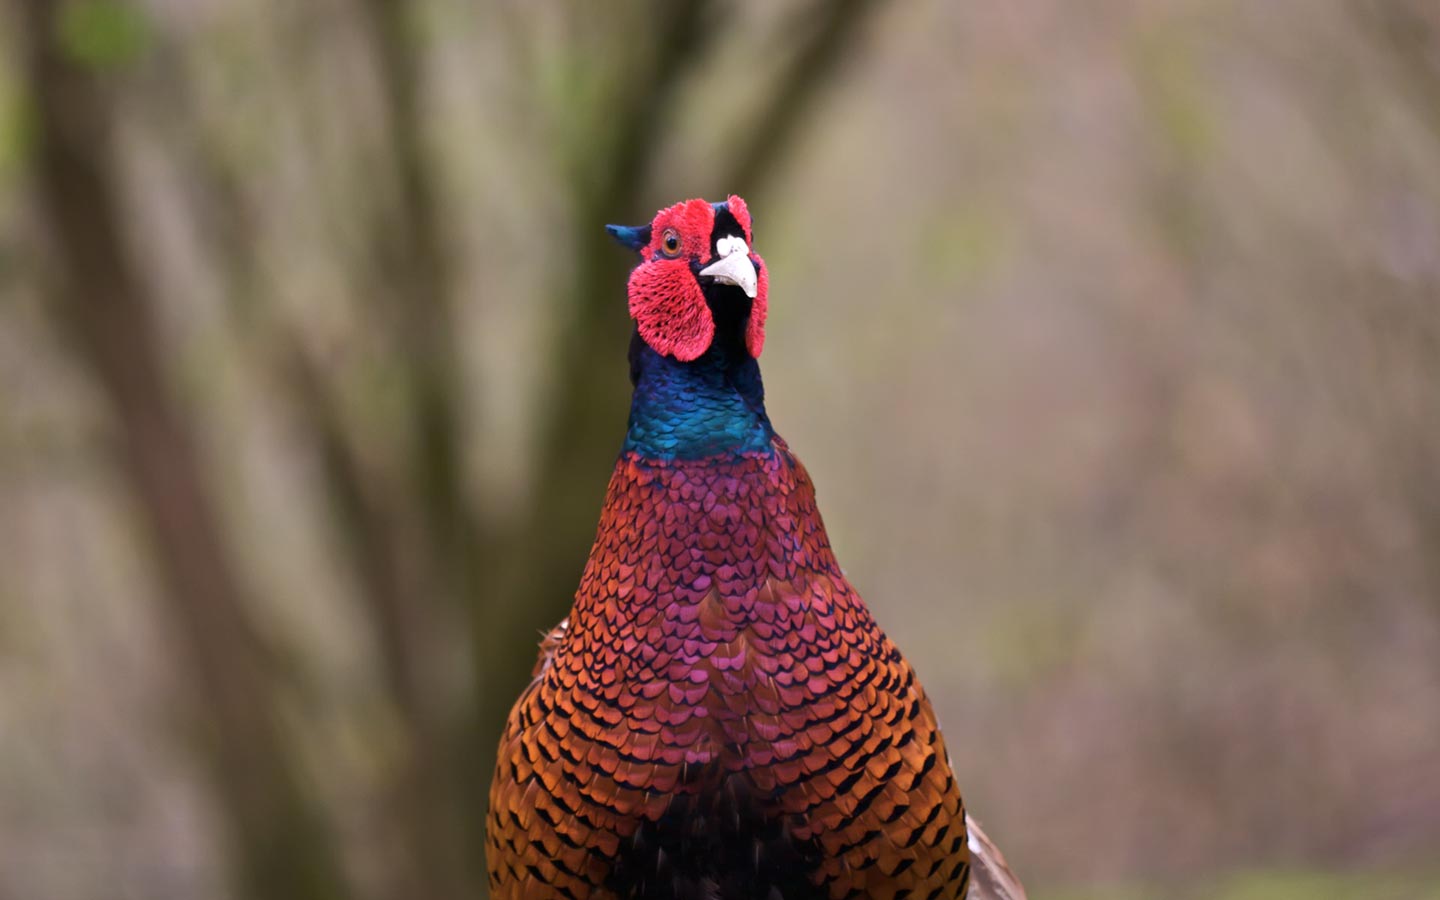 Birding: Close Up of the Female Pheasant.